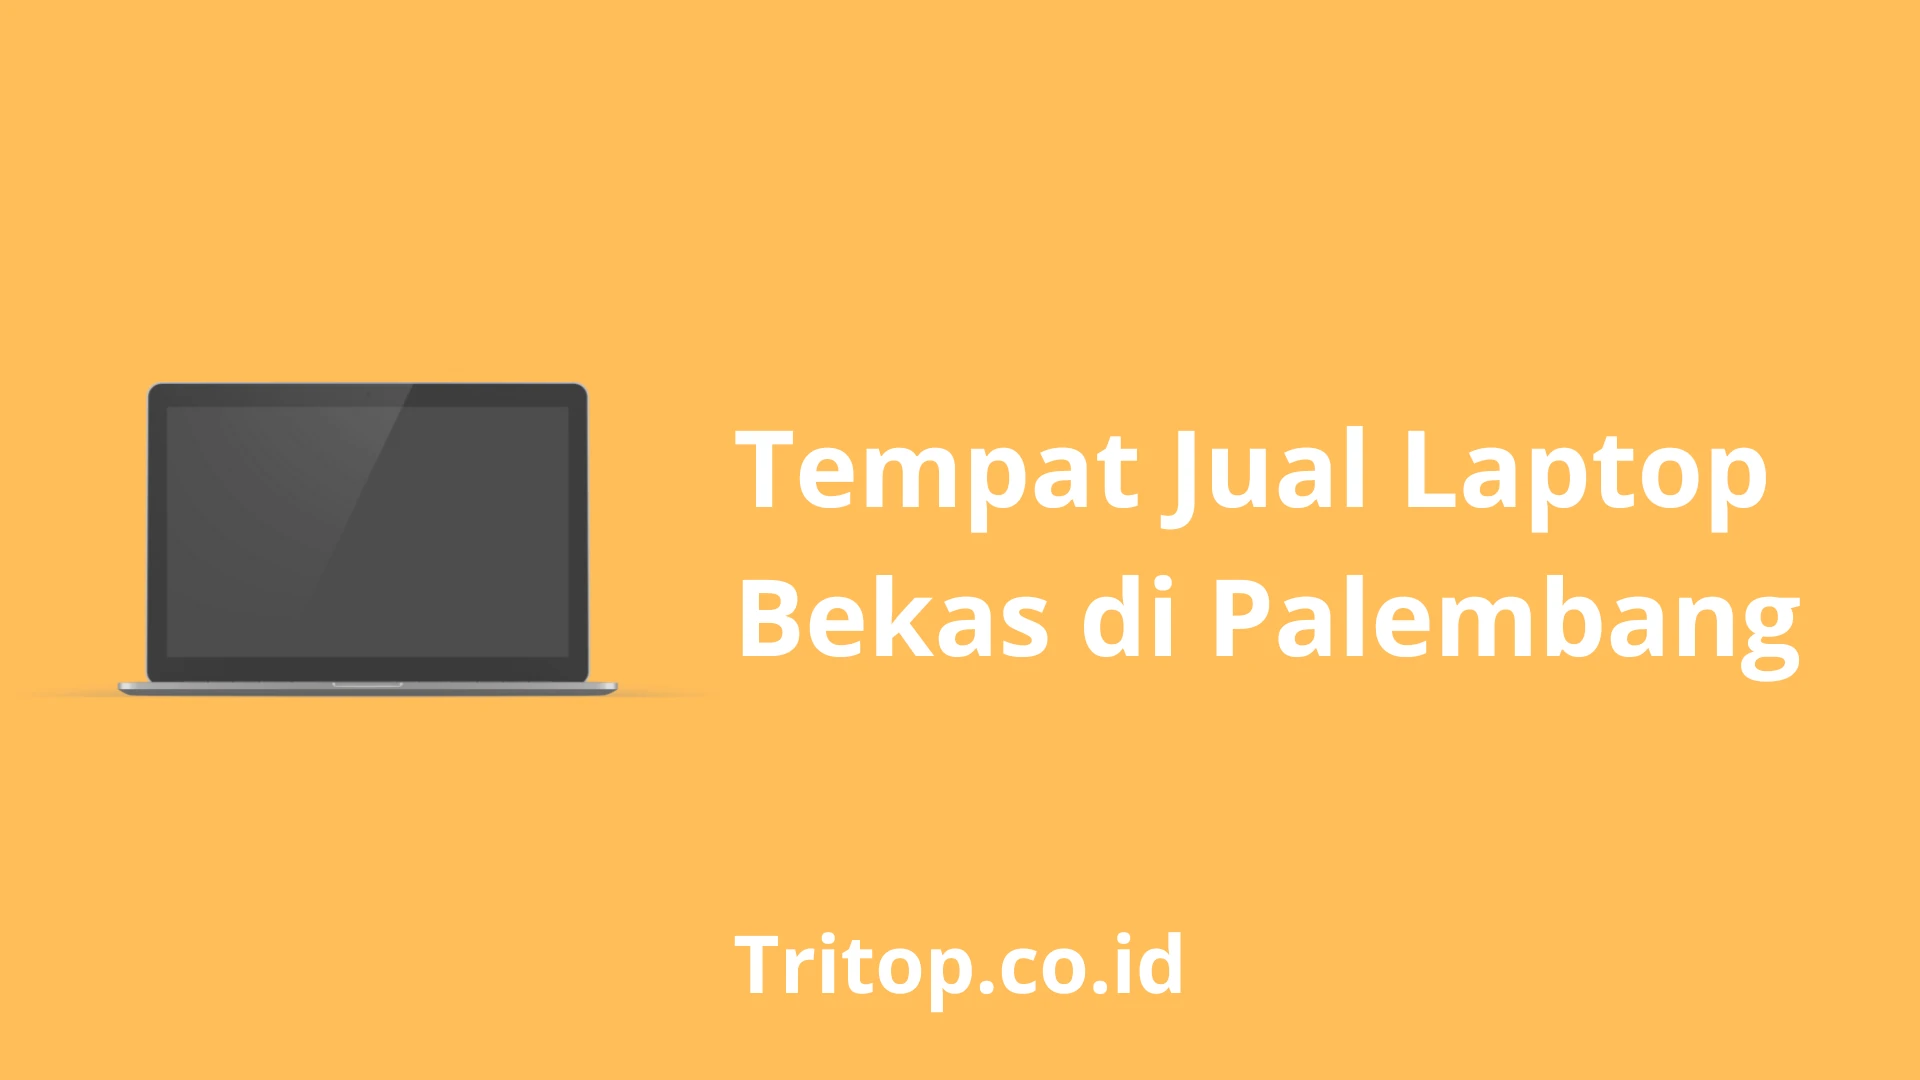 Tempat Jual Laptop Bekas di Palembang tritop.co.id